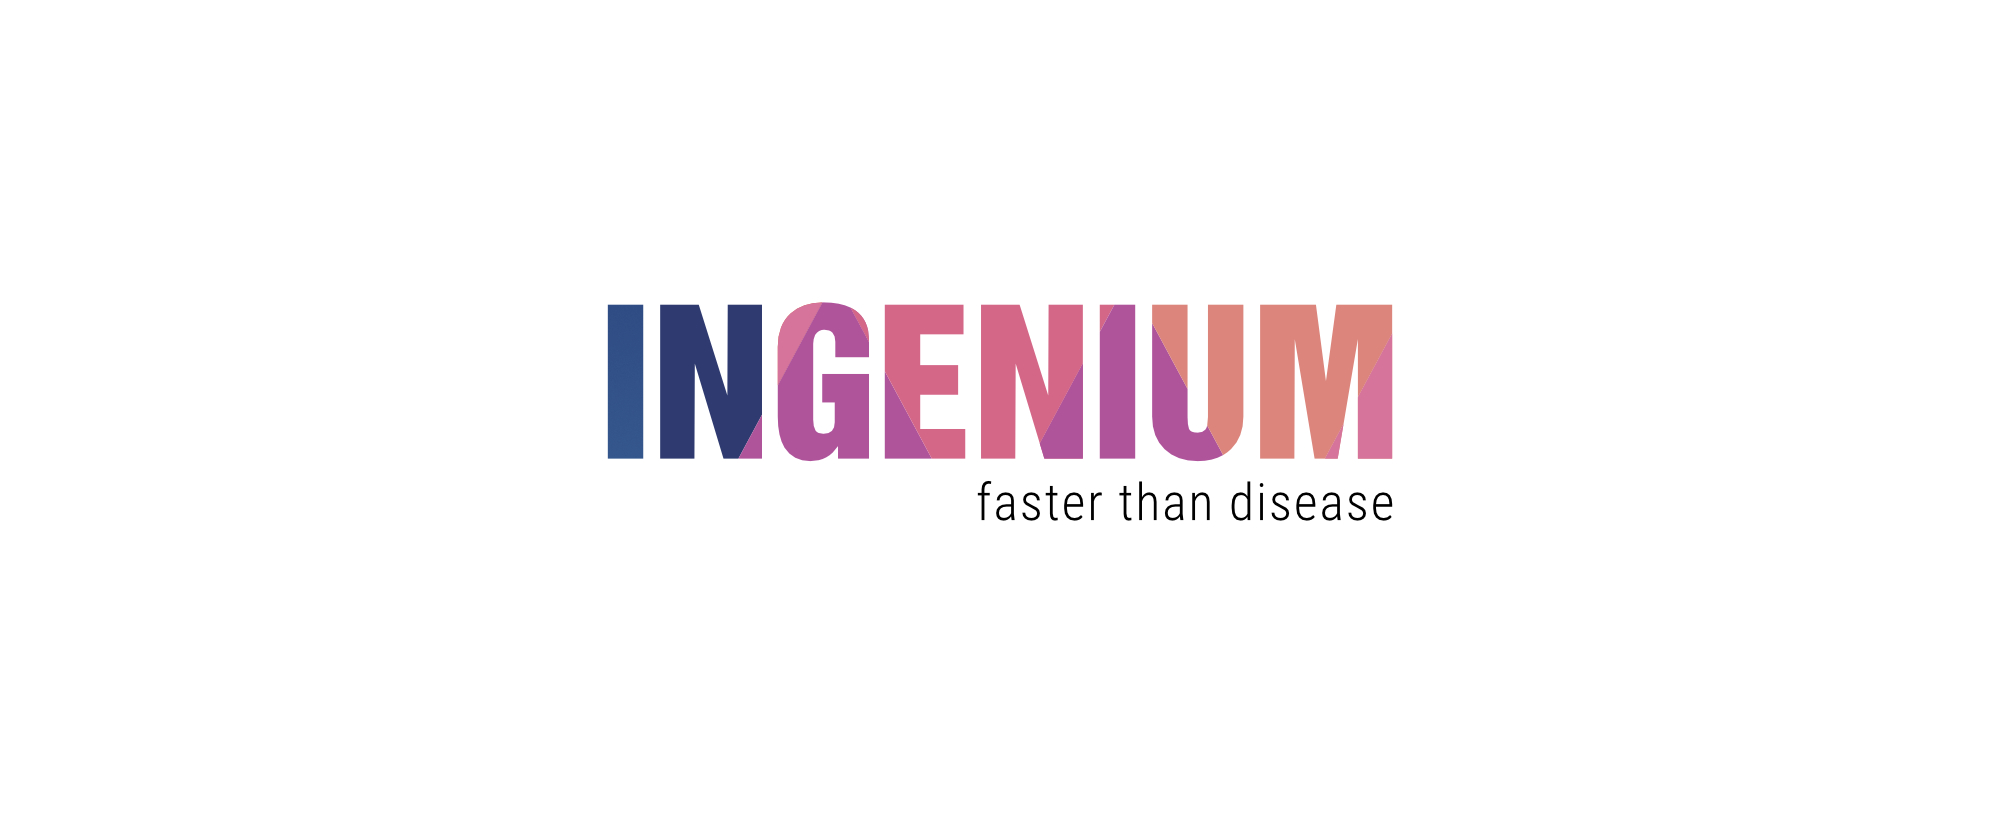 INGENIUM LOGO faster than disease 4 - Ärzte- und Ärztinnenverband Long Covid